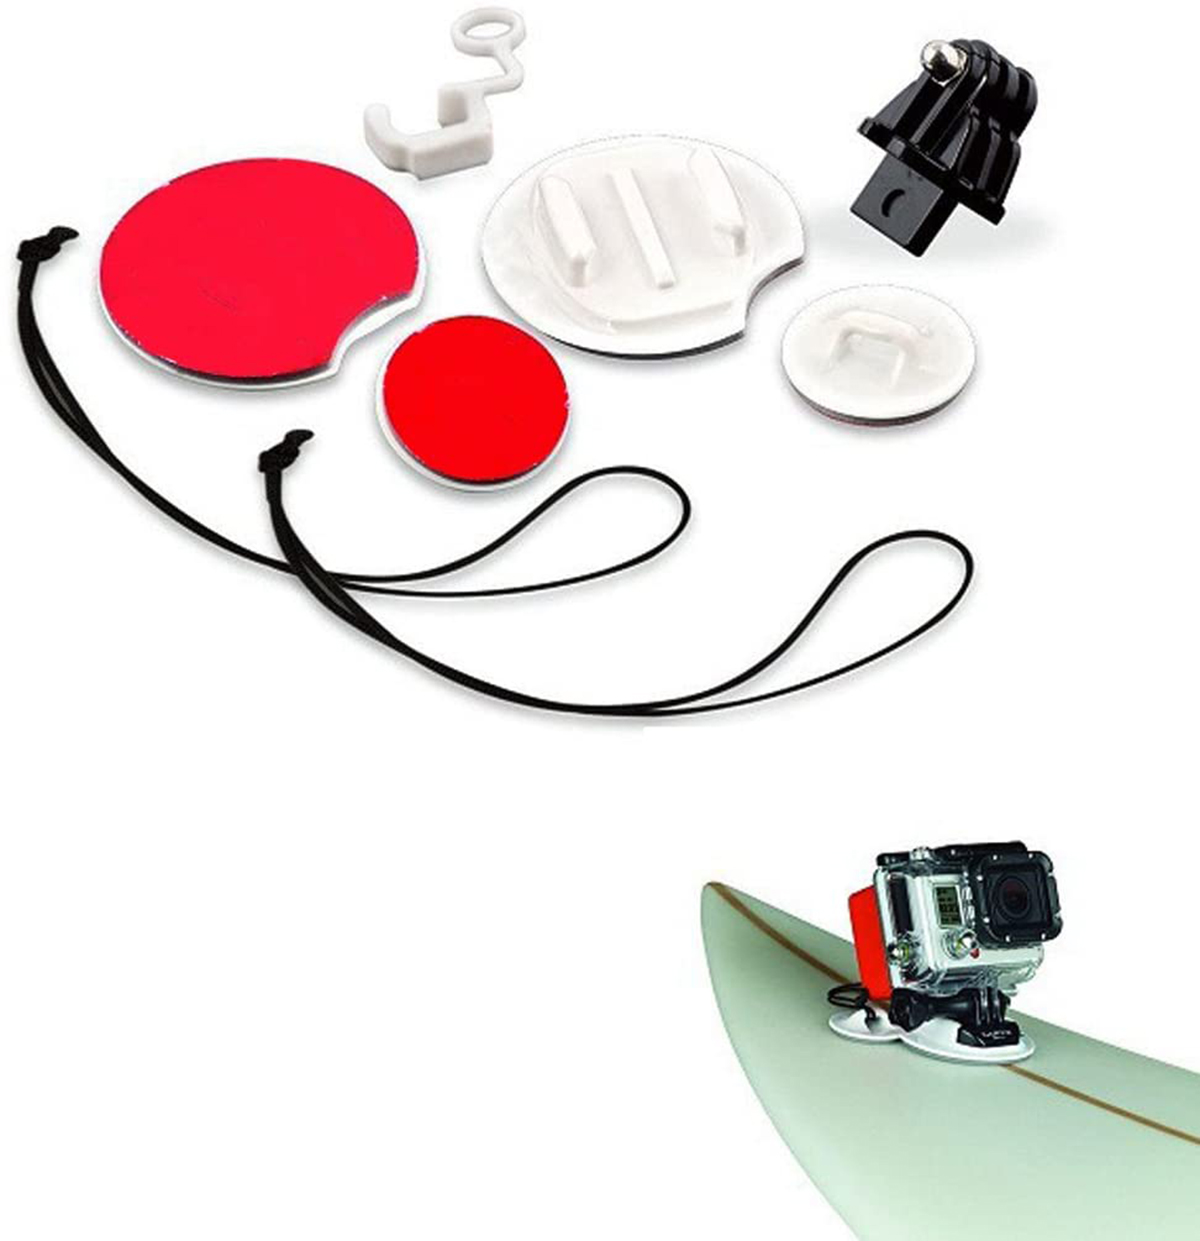 Kit de fixação para pranchas de surf na cor preta - f32